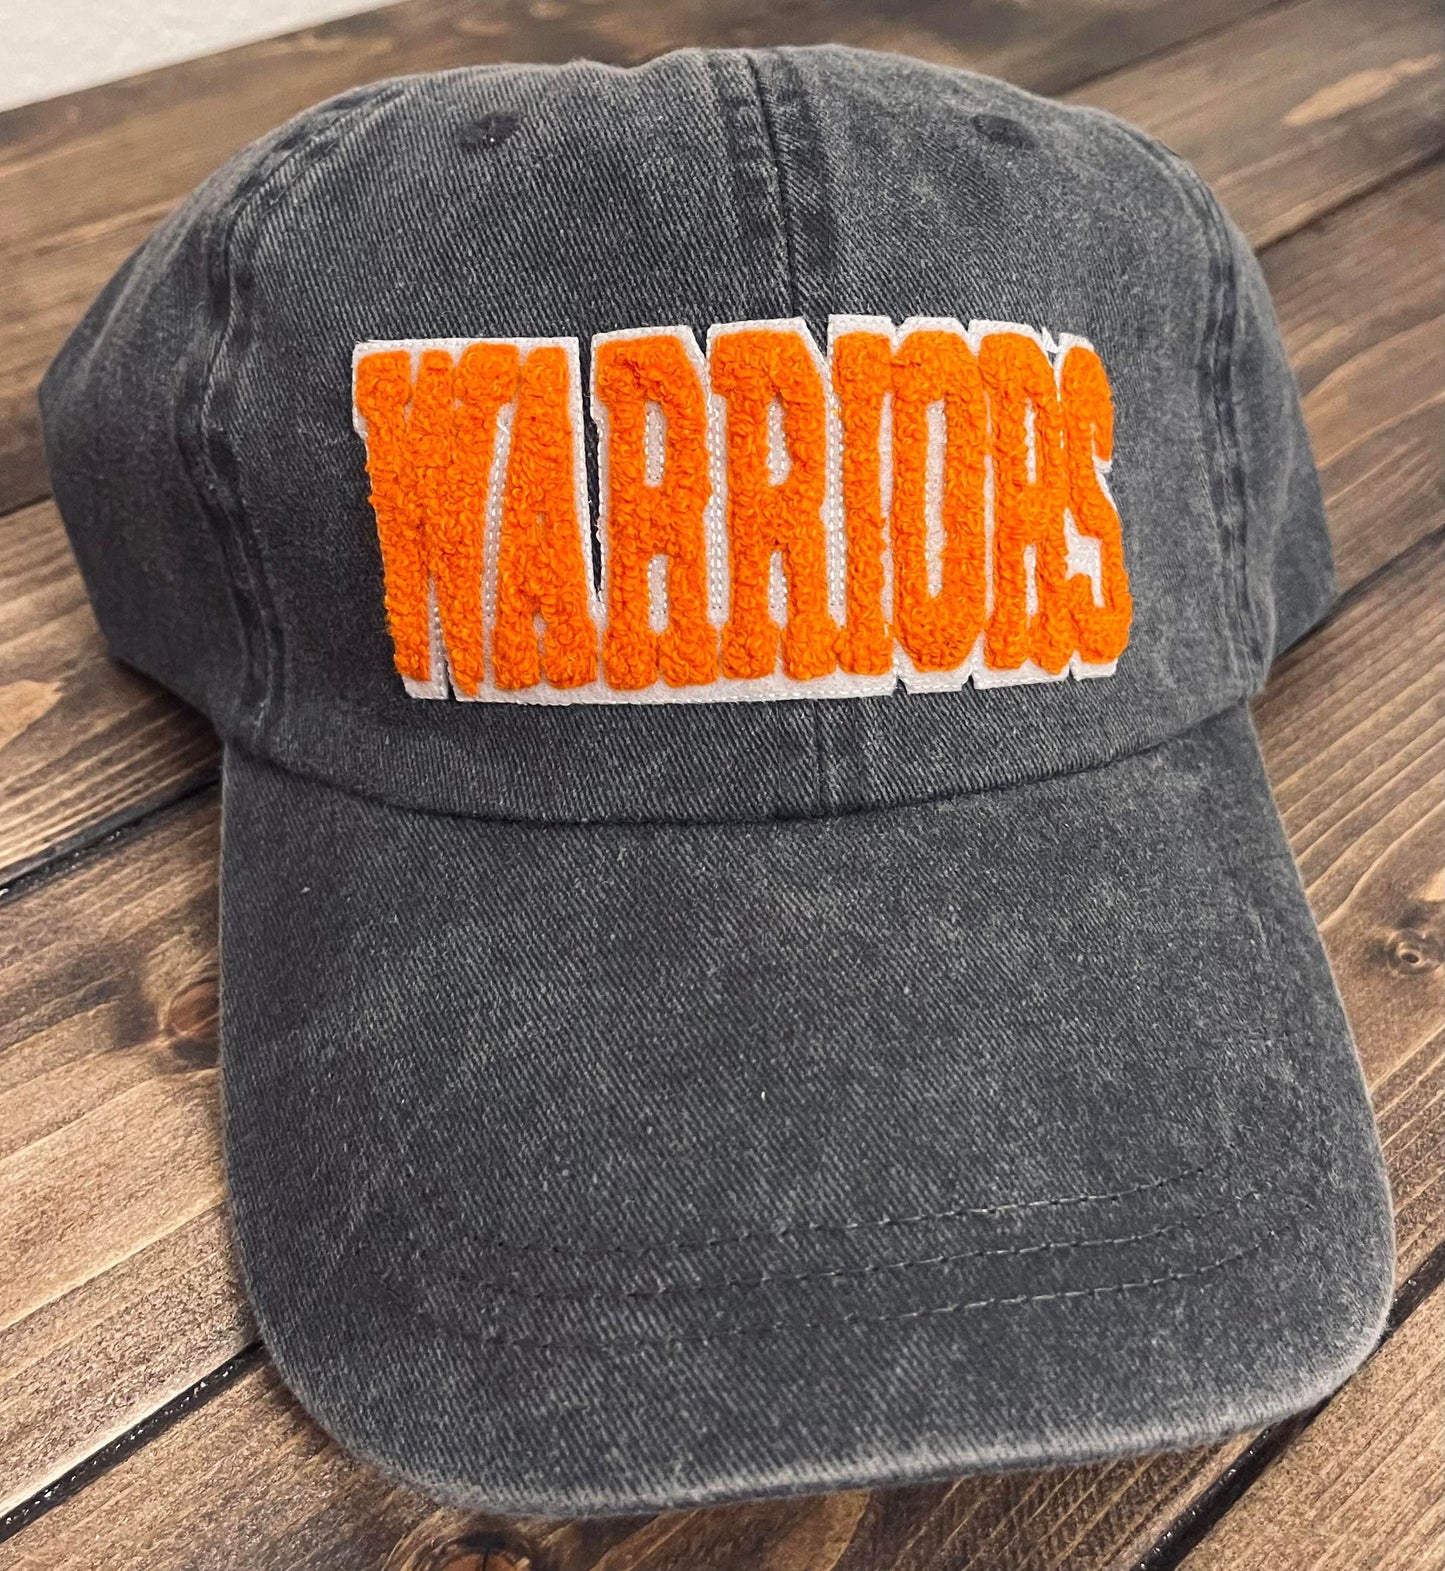 WARRIORS - Vintage Chenille Patch Cap